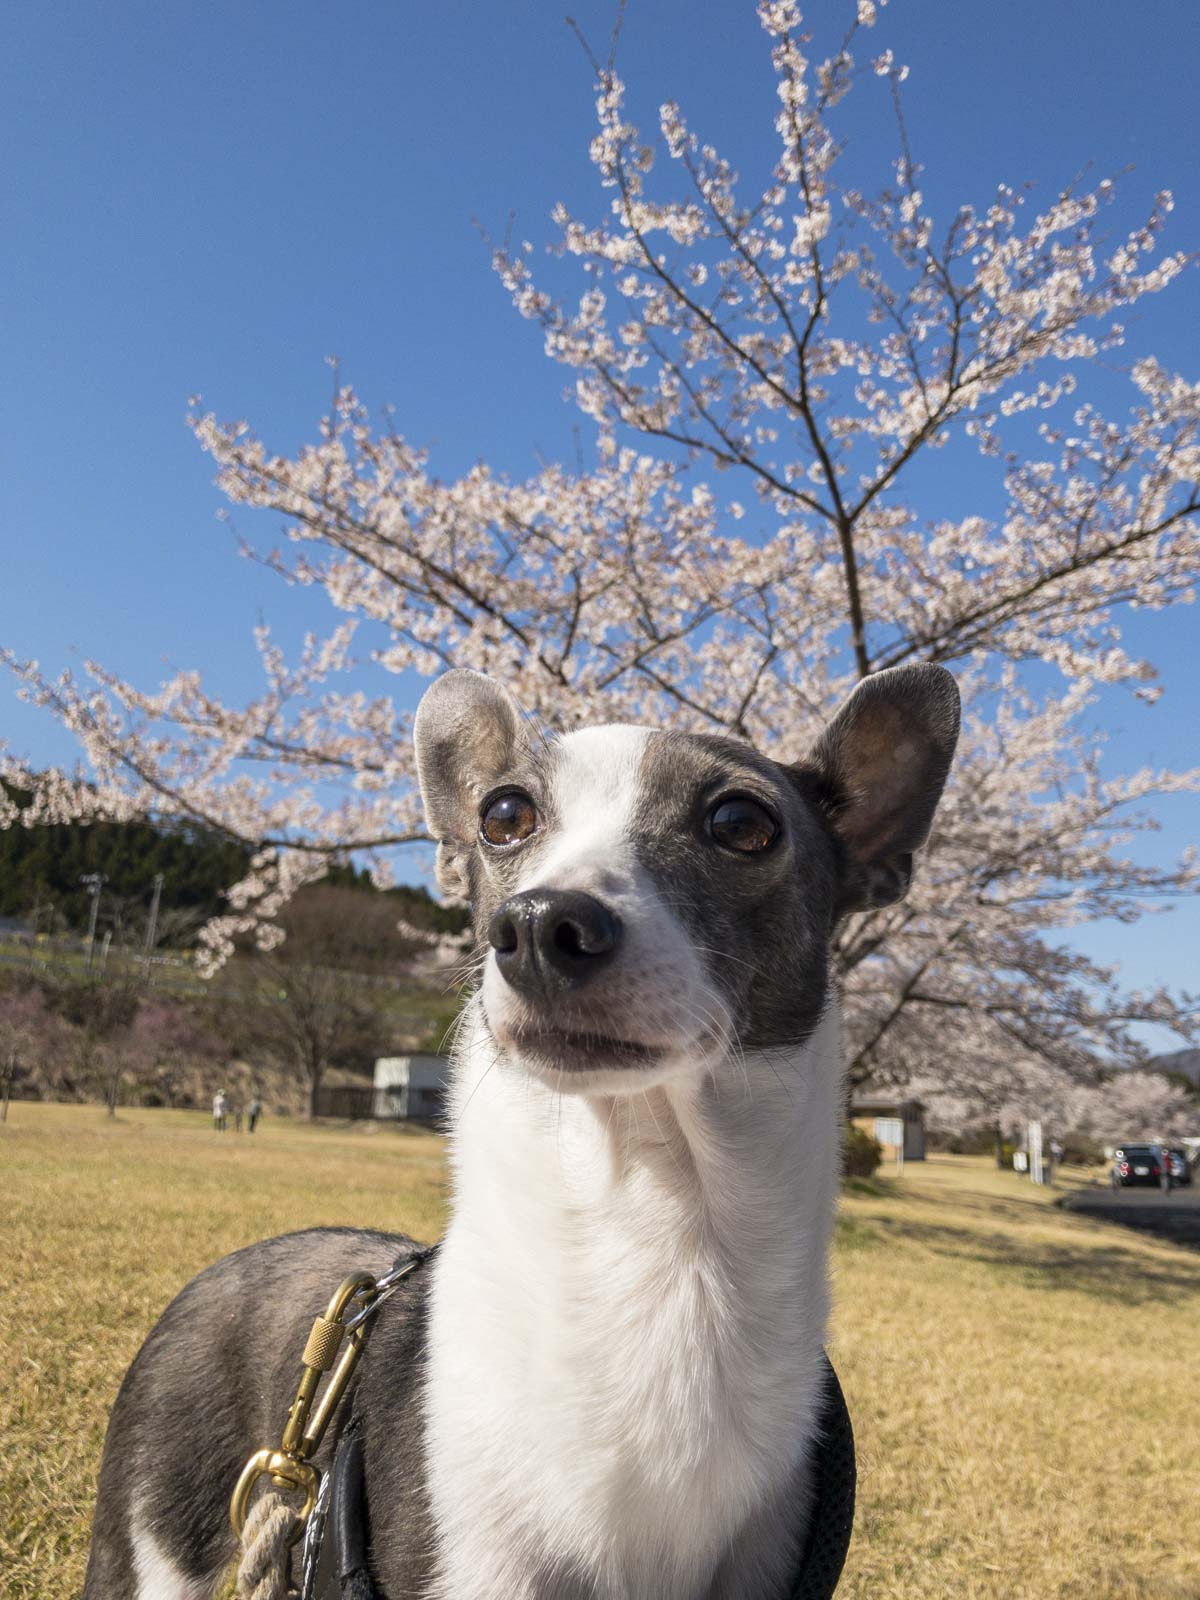 満開の桜の木を背景にした犬のアスターの写真